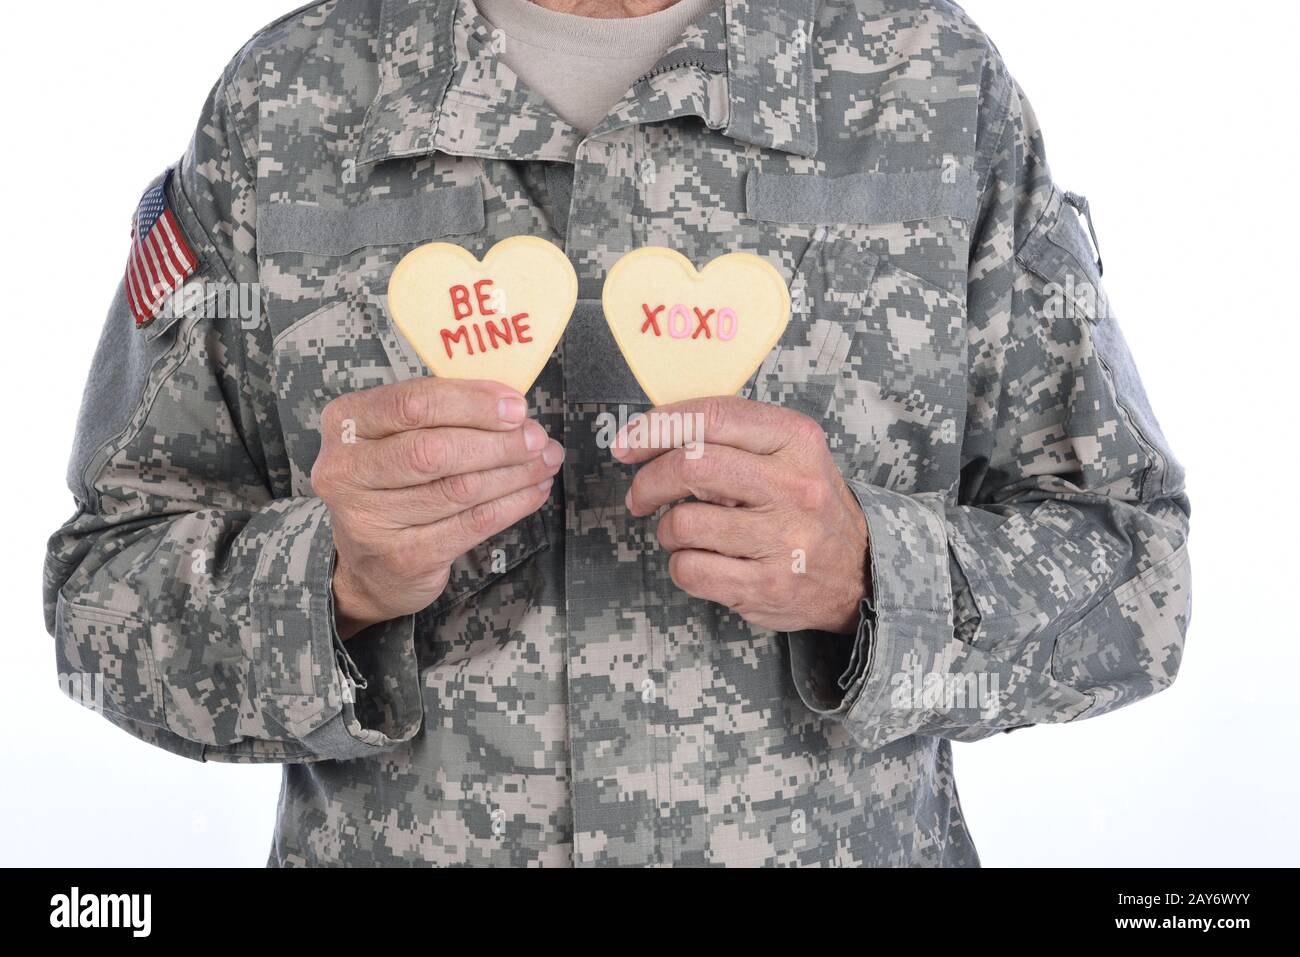 Nahaufnahme eines Soldaten, der zwei Herzförmige Valentins-Tageskekse hält, mit den Worten Sei Mein und XOXO in rotem Icing geschrieben. Stockfoto